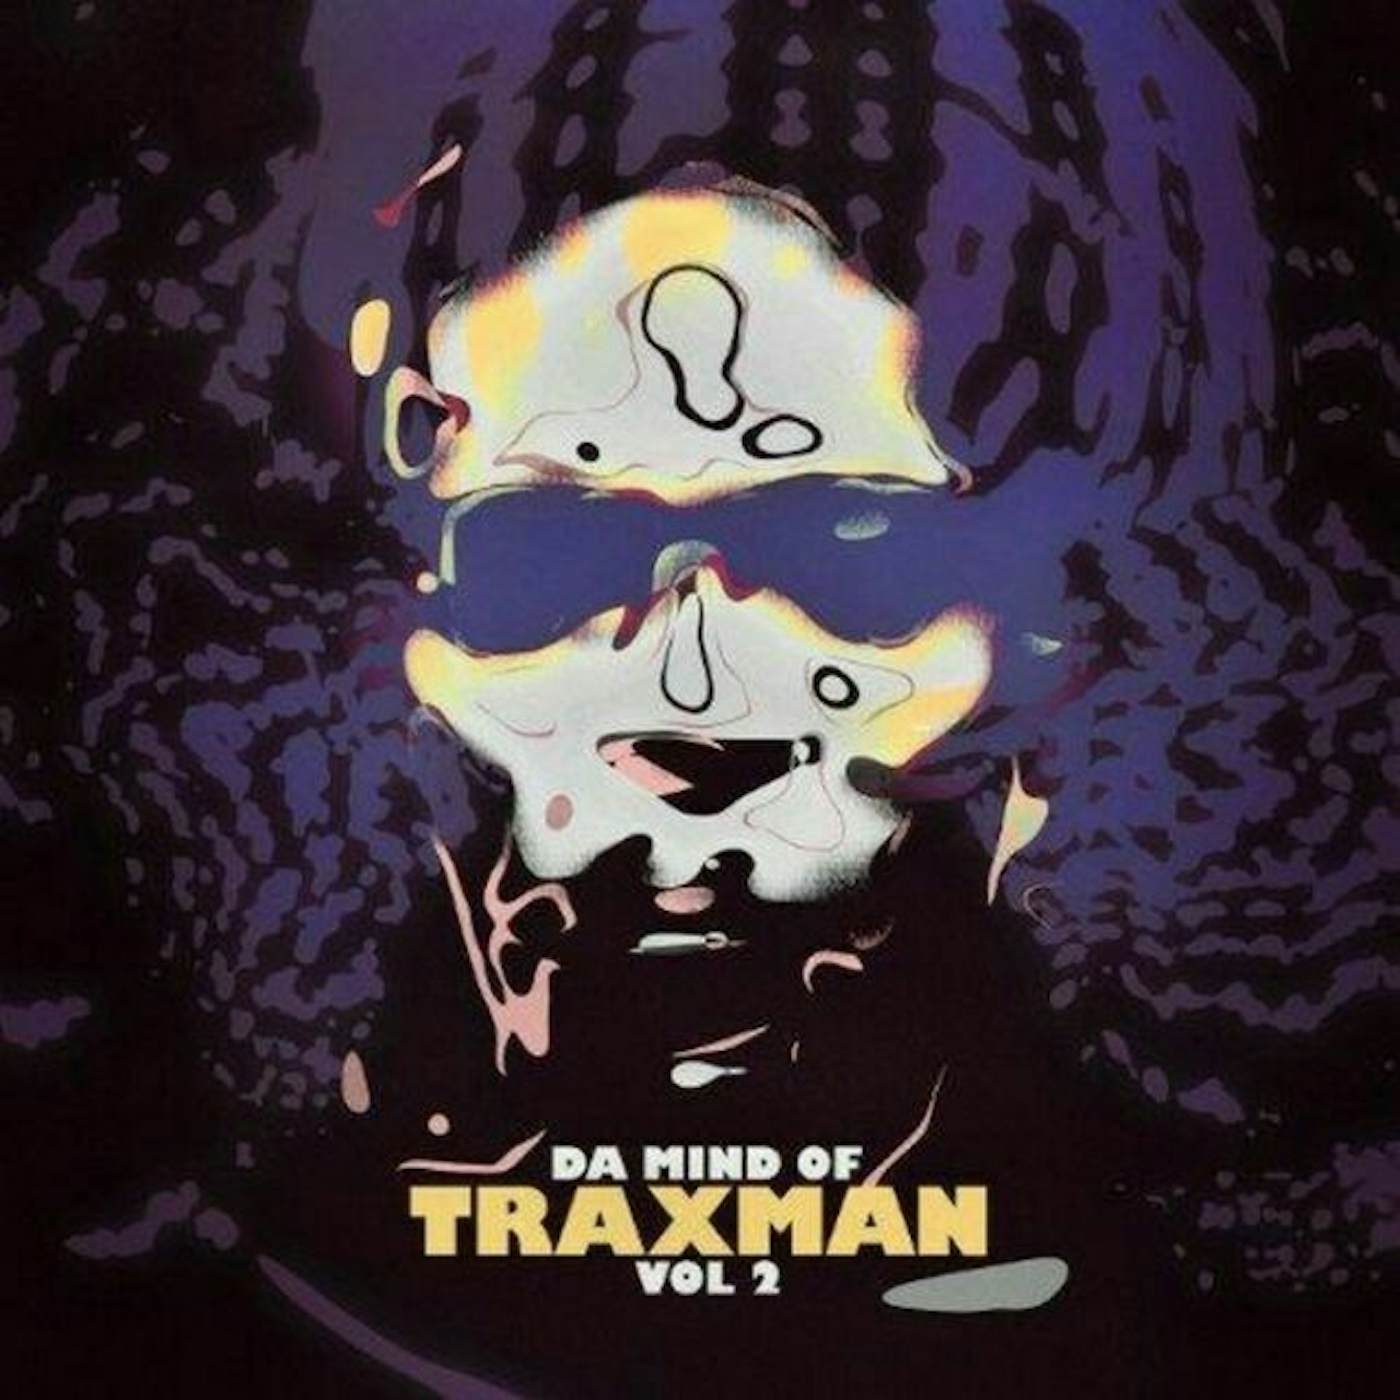 Da Mind Of Traxman Vol. 2 Vinyl Record